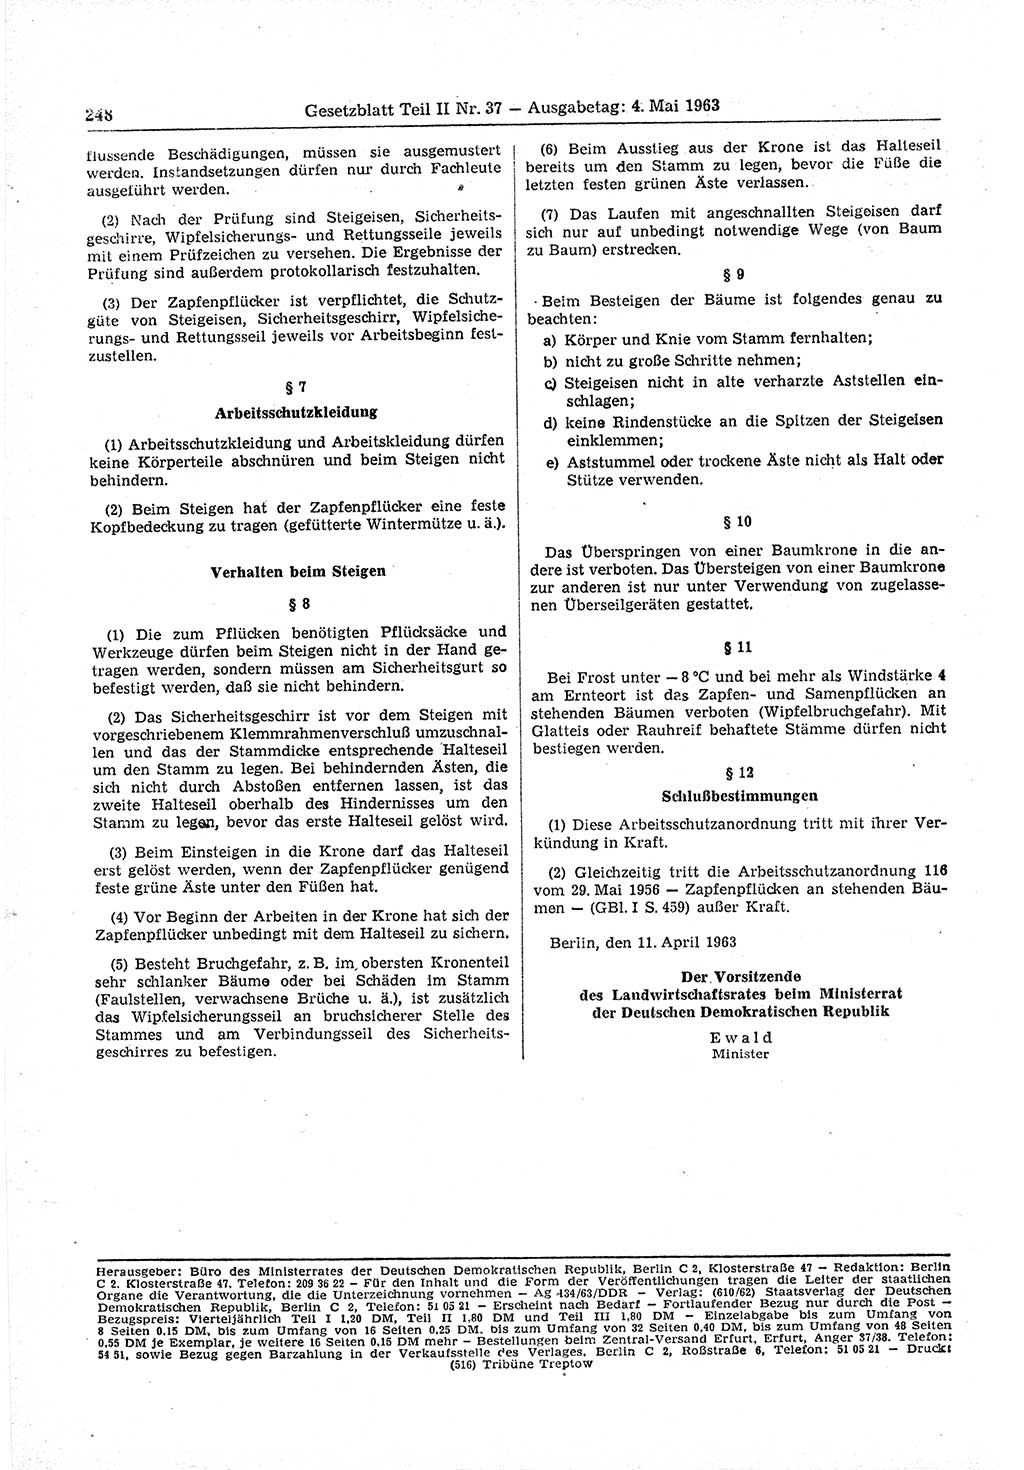 Gesetzblatt (GBl.) der Deutschen Demokratischen Republik (DDR) Teil ⅠⅠ 1963, Seite 248 (GBl. DDR ⅠⅠ 1963, S. 248)